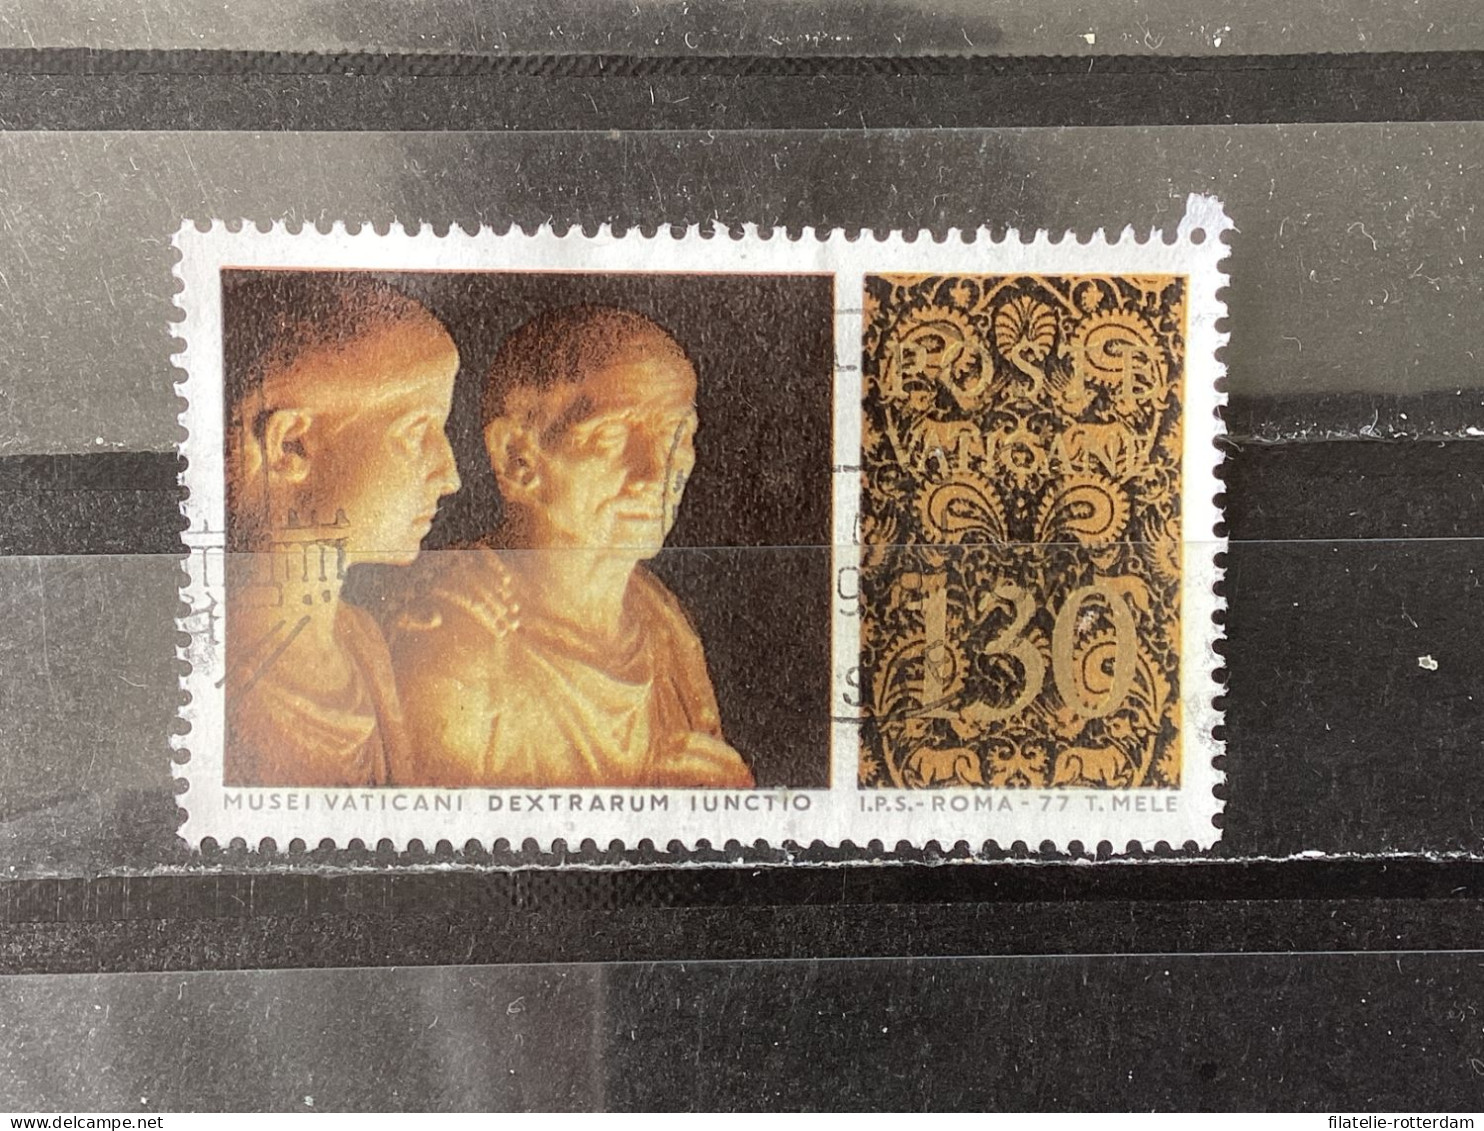 Vatican City / Vaticaanstad - Art Treasures (130) 1977 - Used Stamps